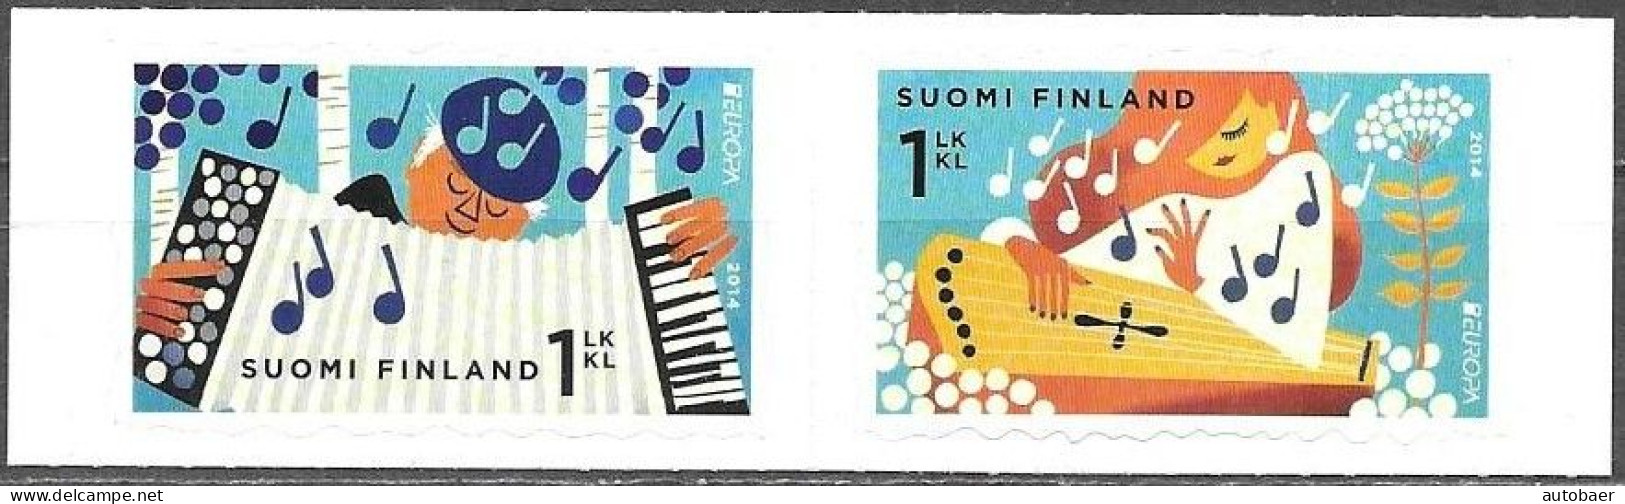 Finland Finnland Finlande Suomi 2014 Europa Cept Music Instruments Michel Nr. 2304-05 MNH ** Postfrisch Neuf - 2014